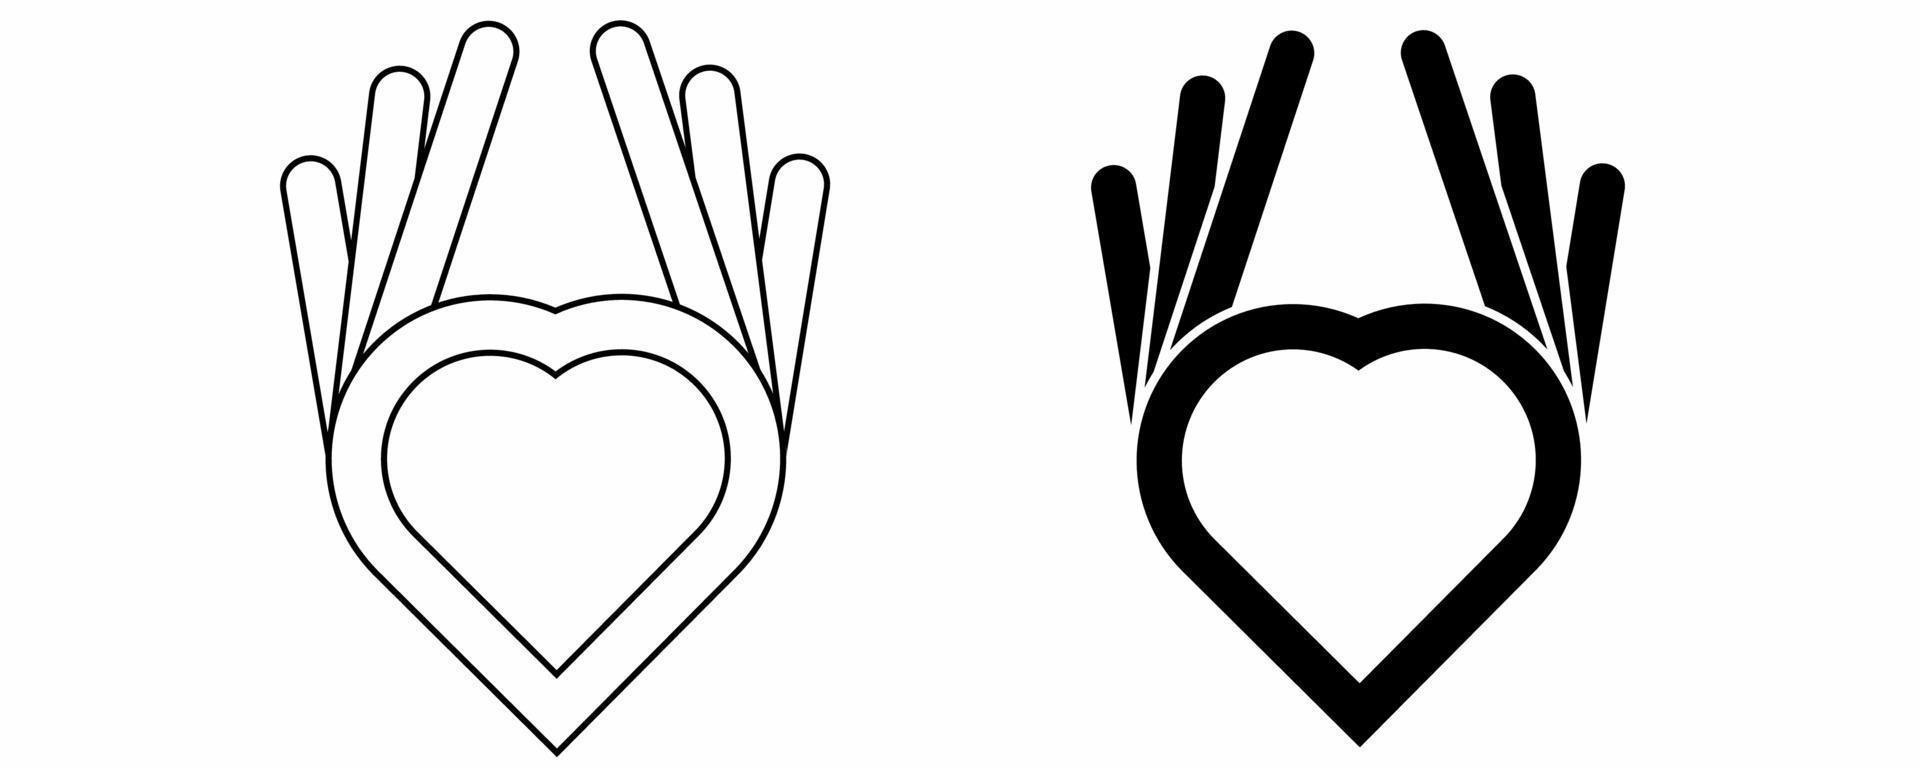 Umriss-Silhouette-Liebe-Hand-Icon-Set isoliert auf weißem Hintergrund vektor